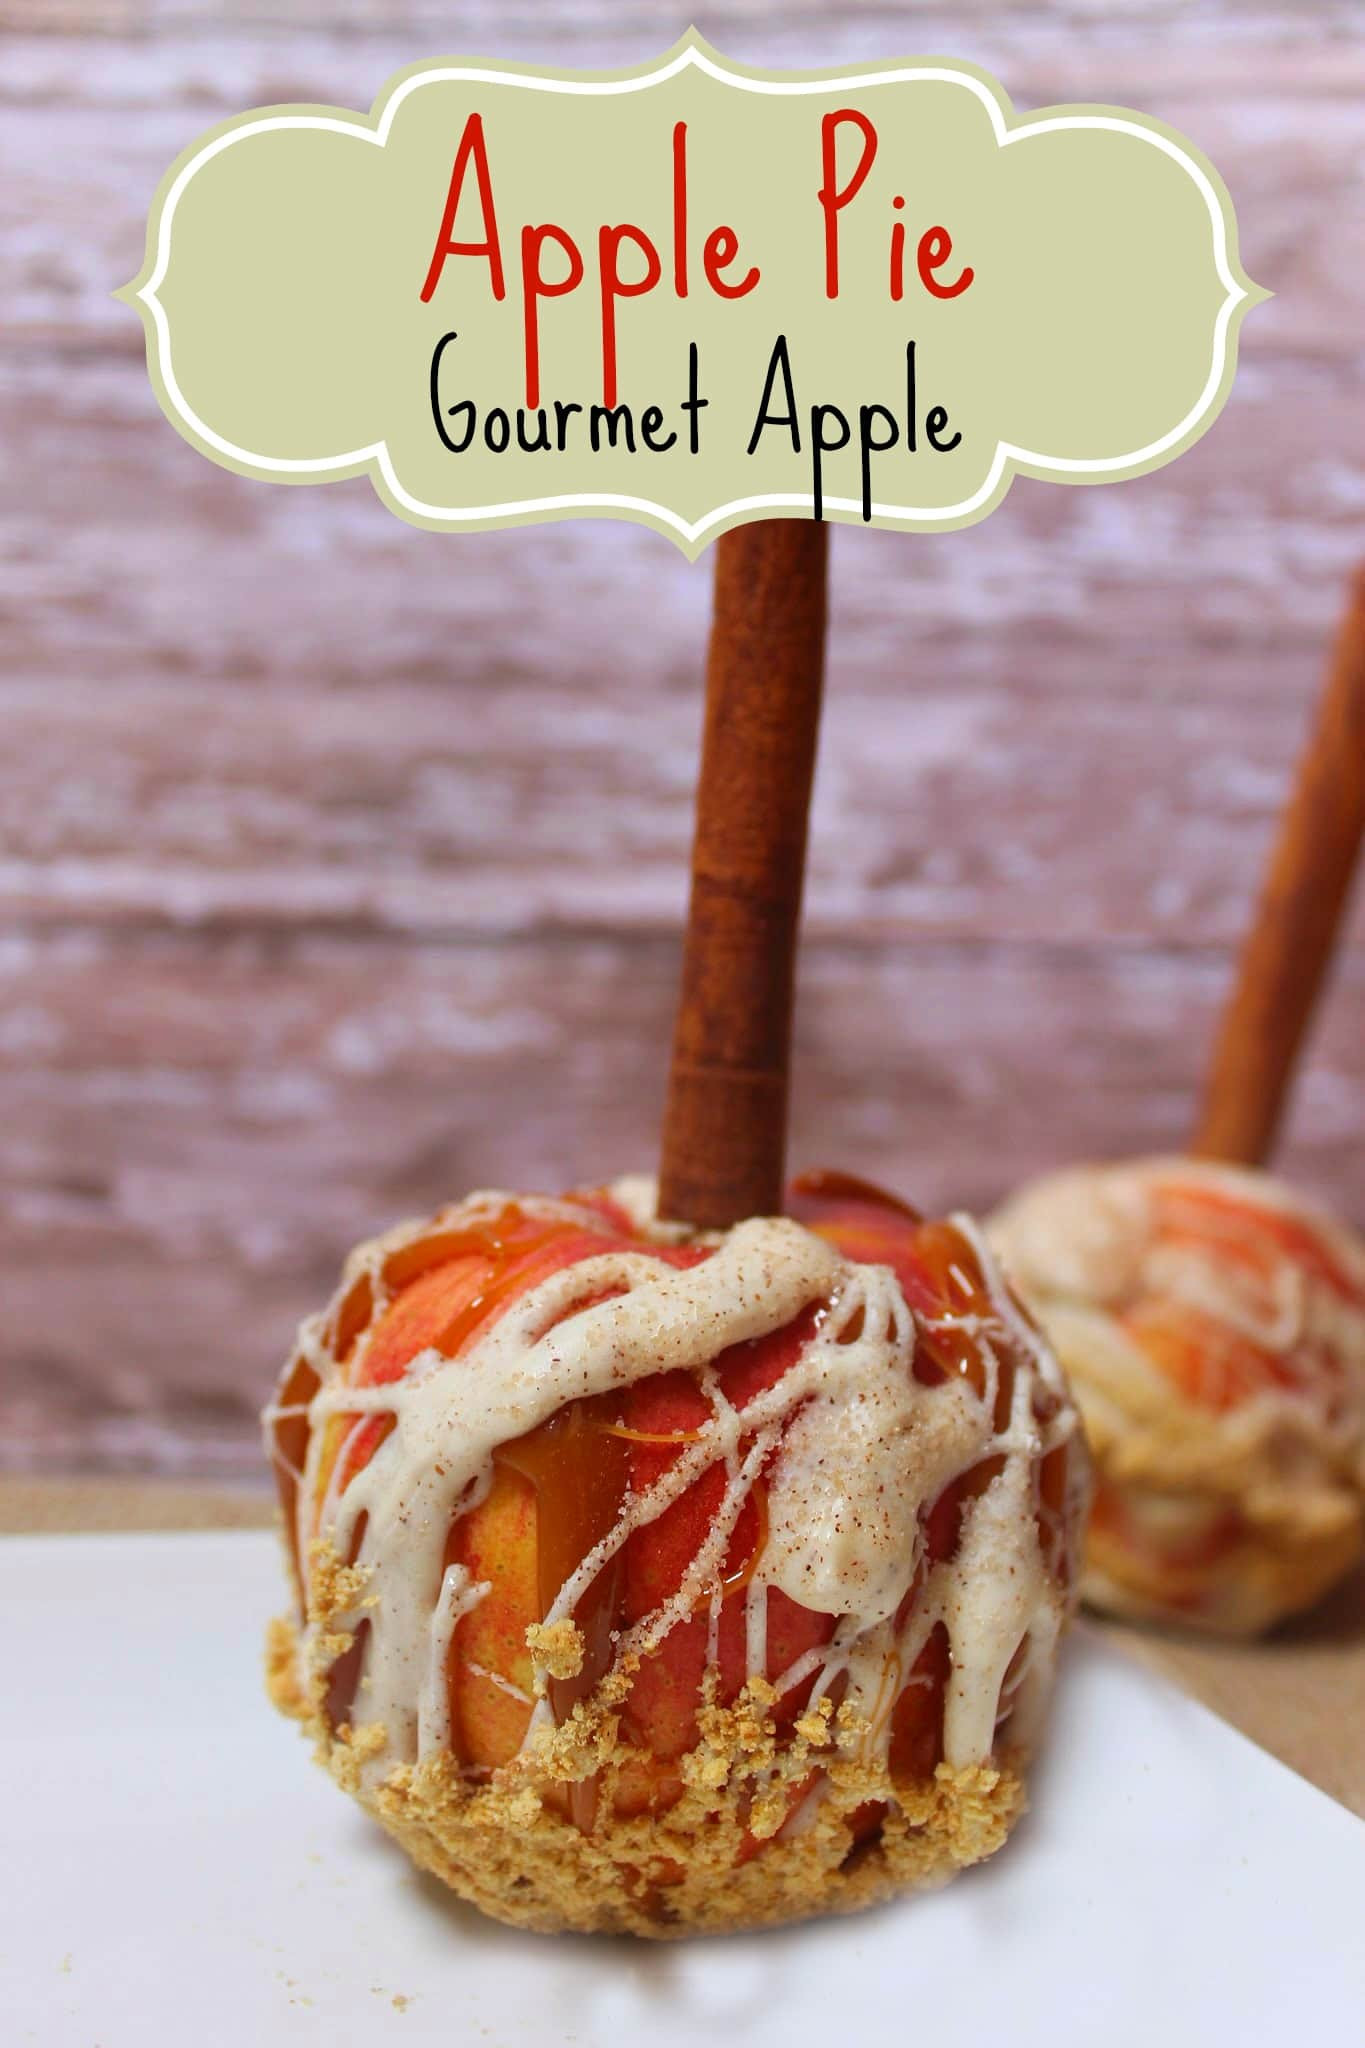 Gourmet Apple Pie
 Apple Pie Caramel Apple A Gourmet Caramel Apple Recipe